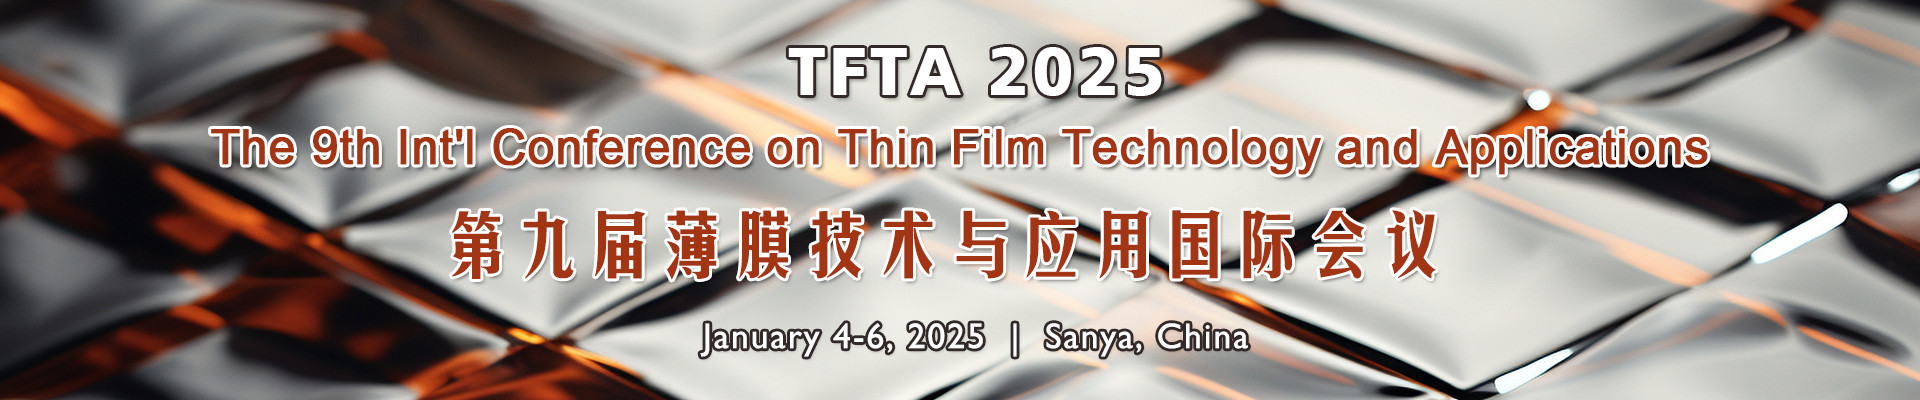 第九届薄膜技术与应用国际会议(TFTA 2025)